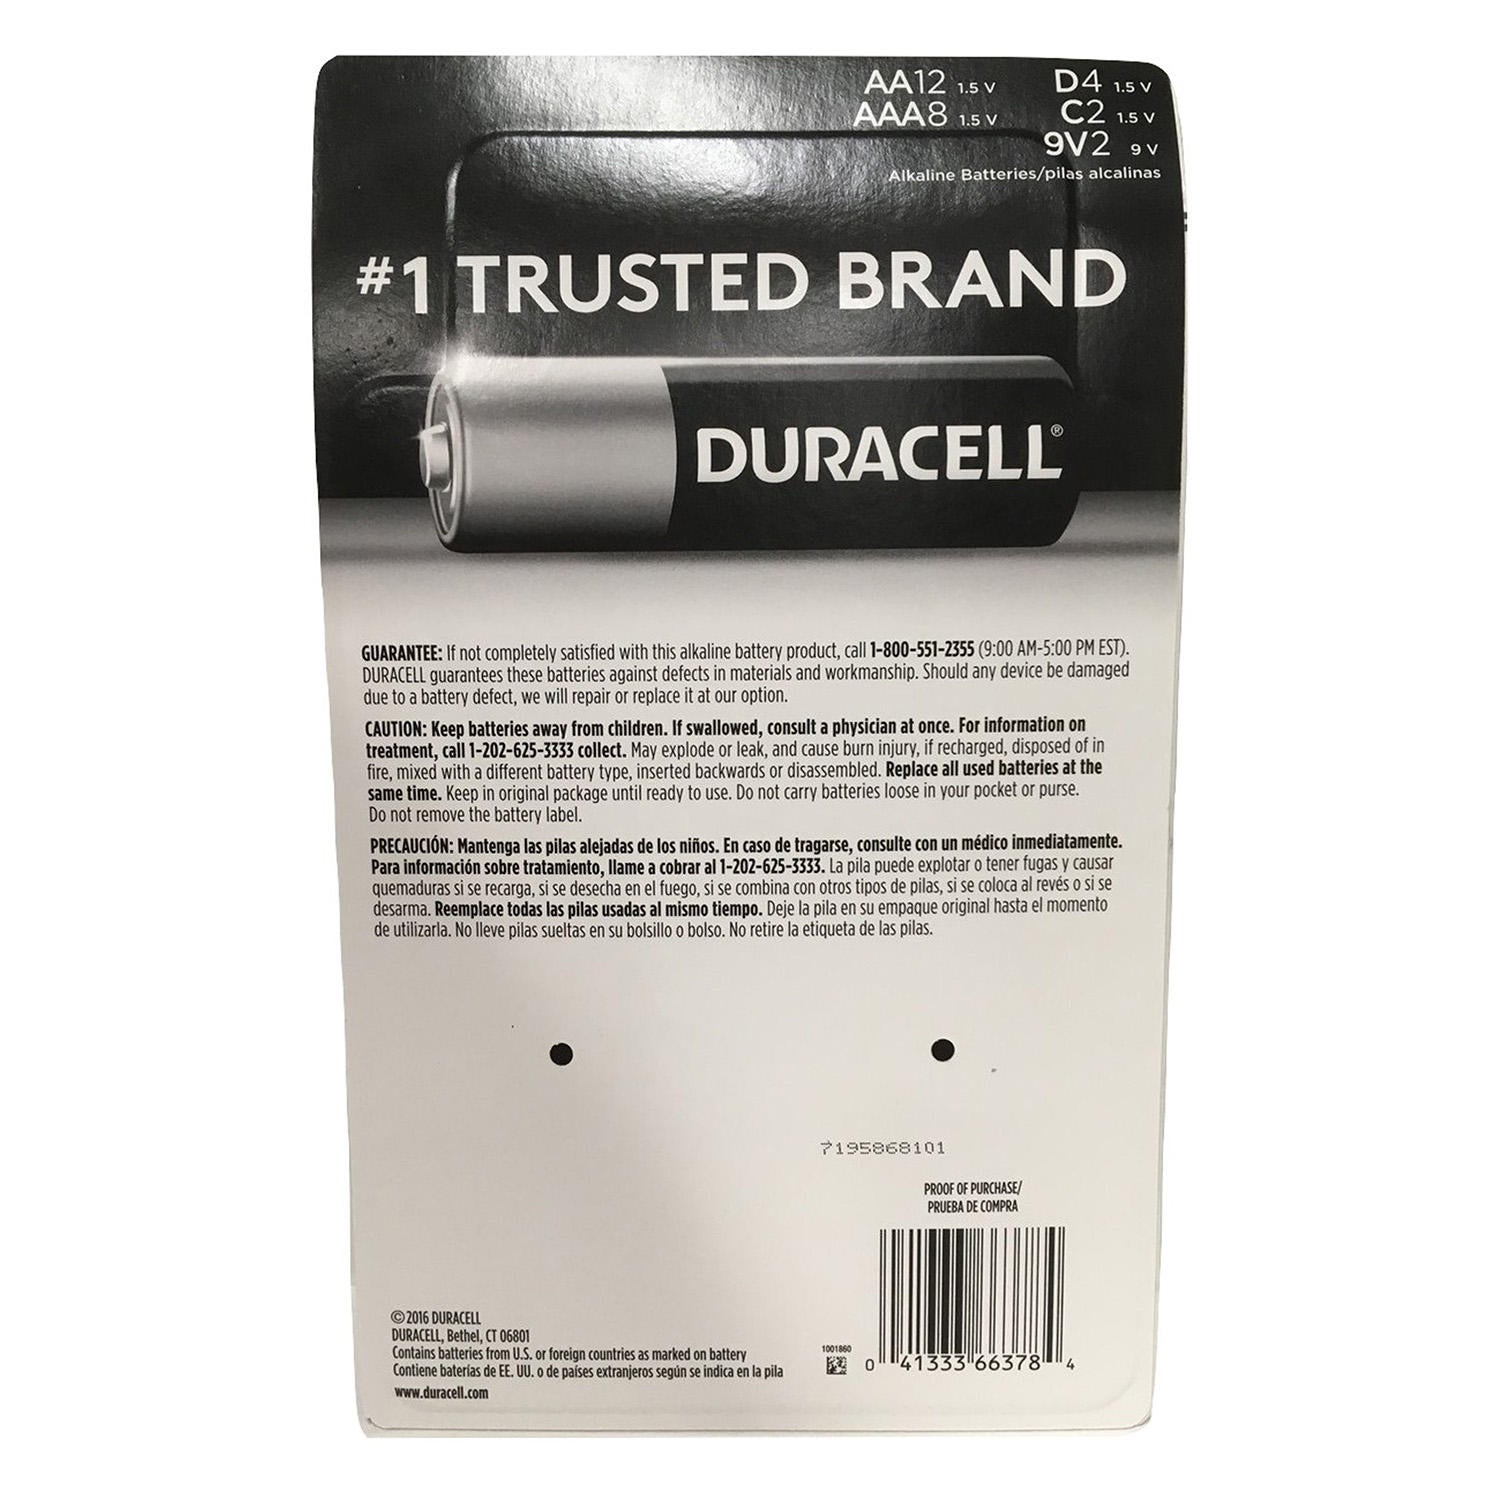 Pack de 4 Pilas Duracell AAA - Duracell